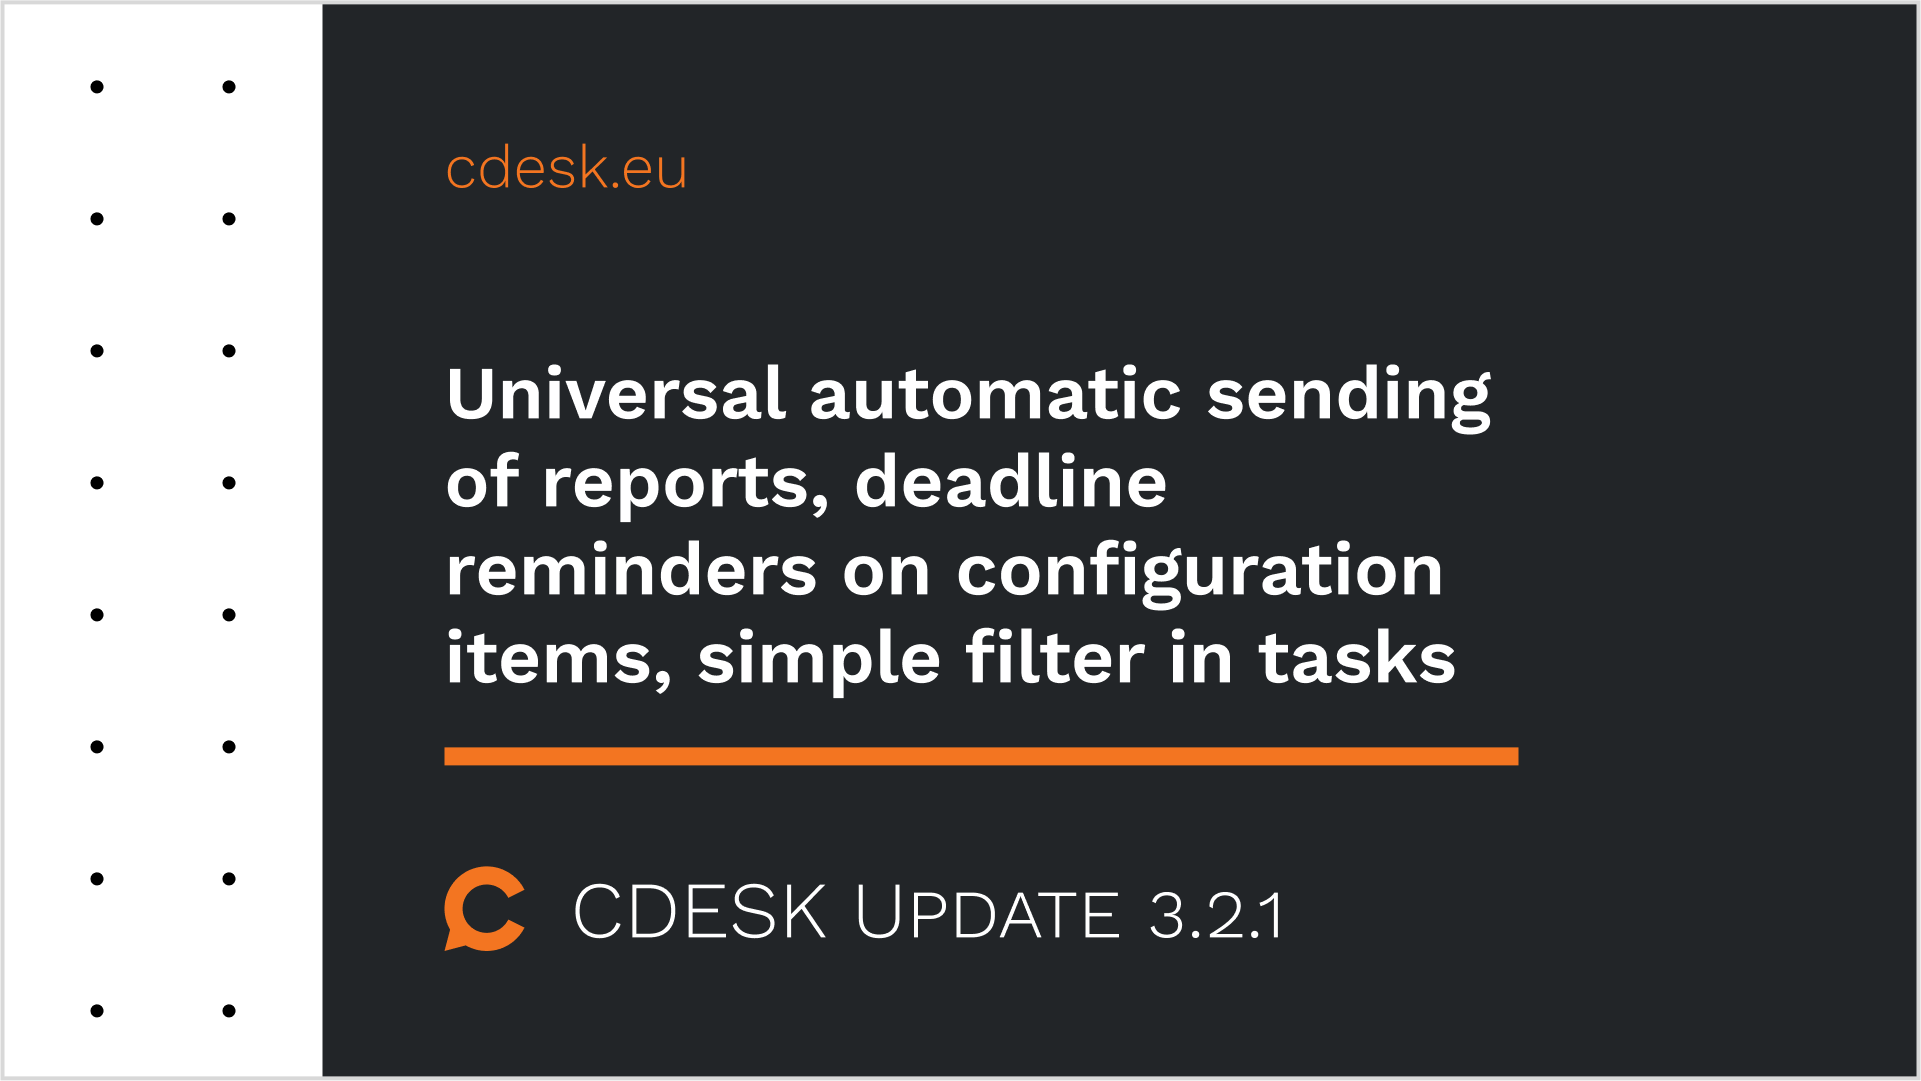 Univerzálne automatické odosielanie reportov, pripomínanie termínov na konfiguračných položkách, jednoduchý filter v úlohách